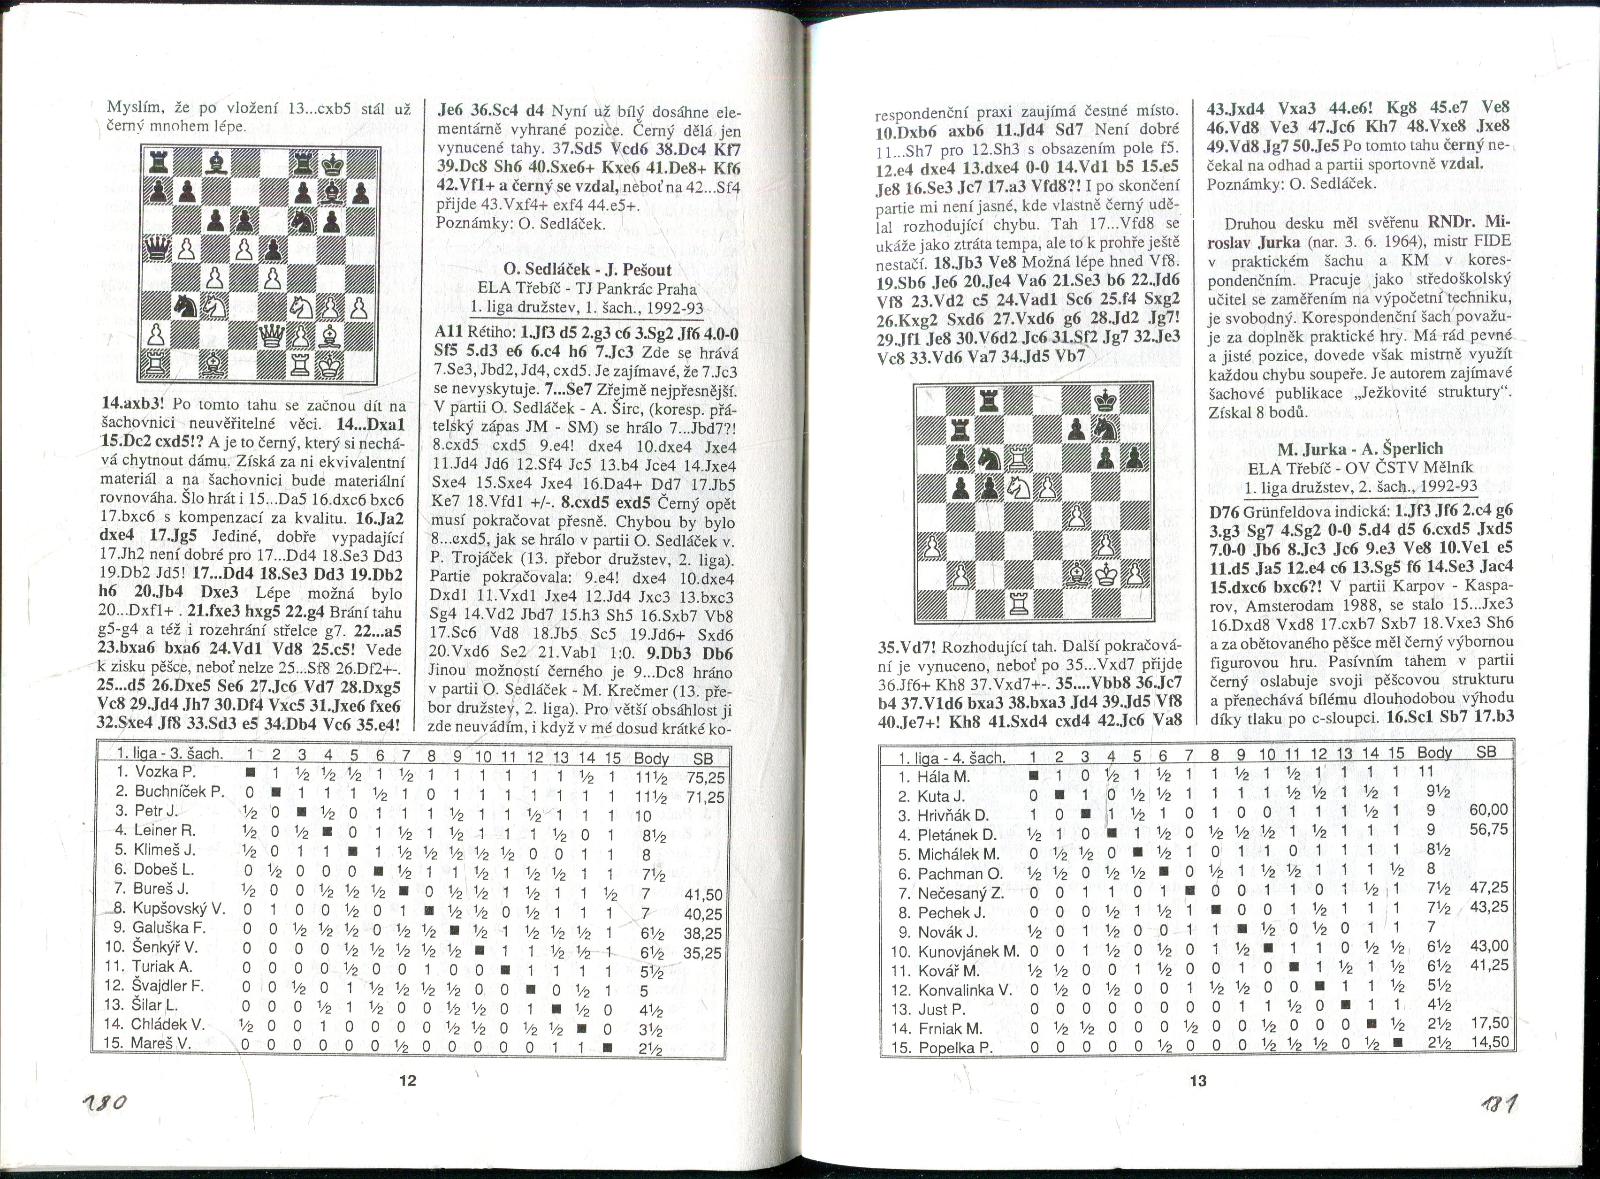 časopis Korespondenční šach ročník III 1993 - 6 čísel - Knihy a časopisy